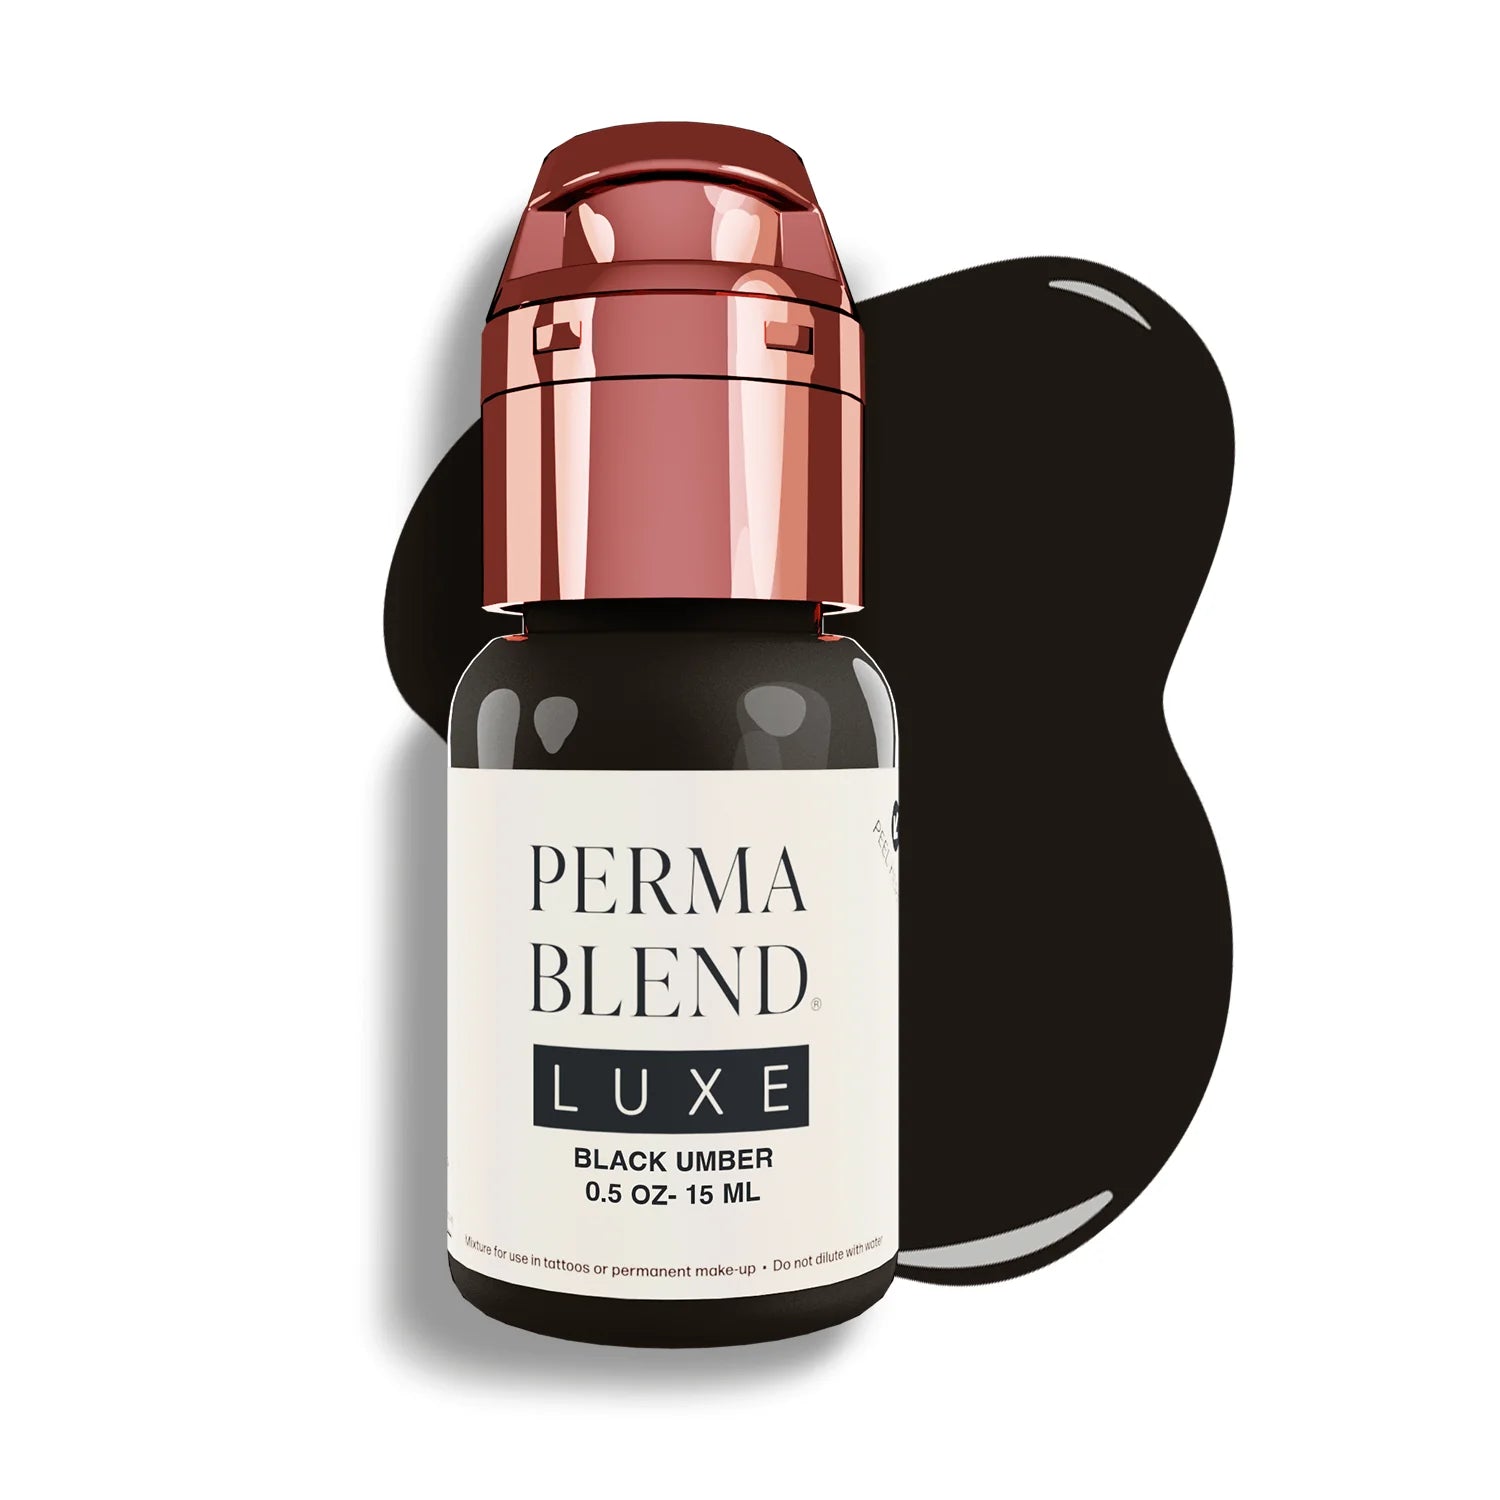 Perma Blend Luxe - Black Umber